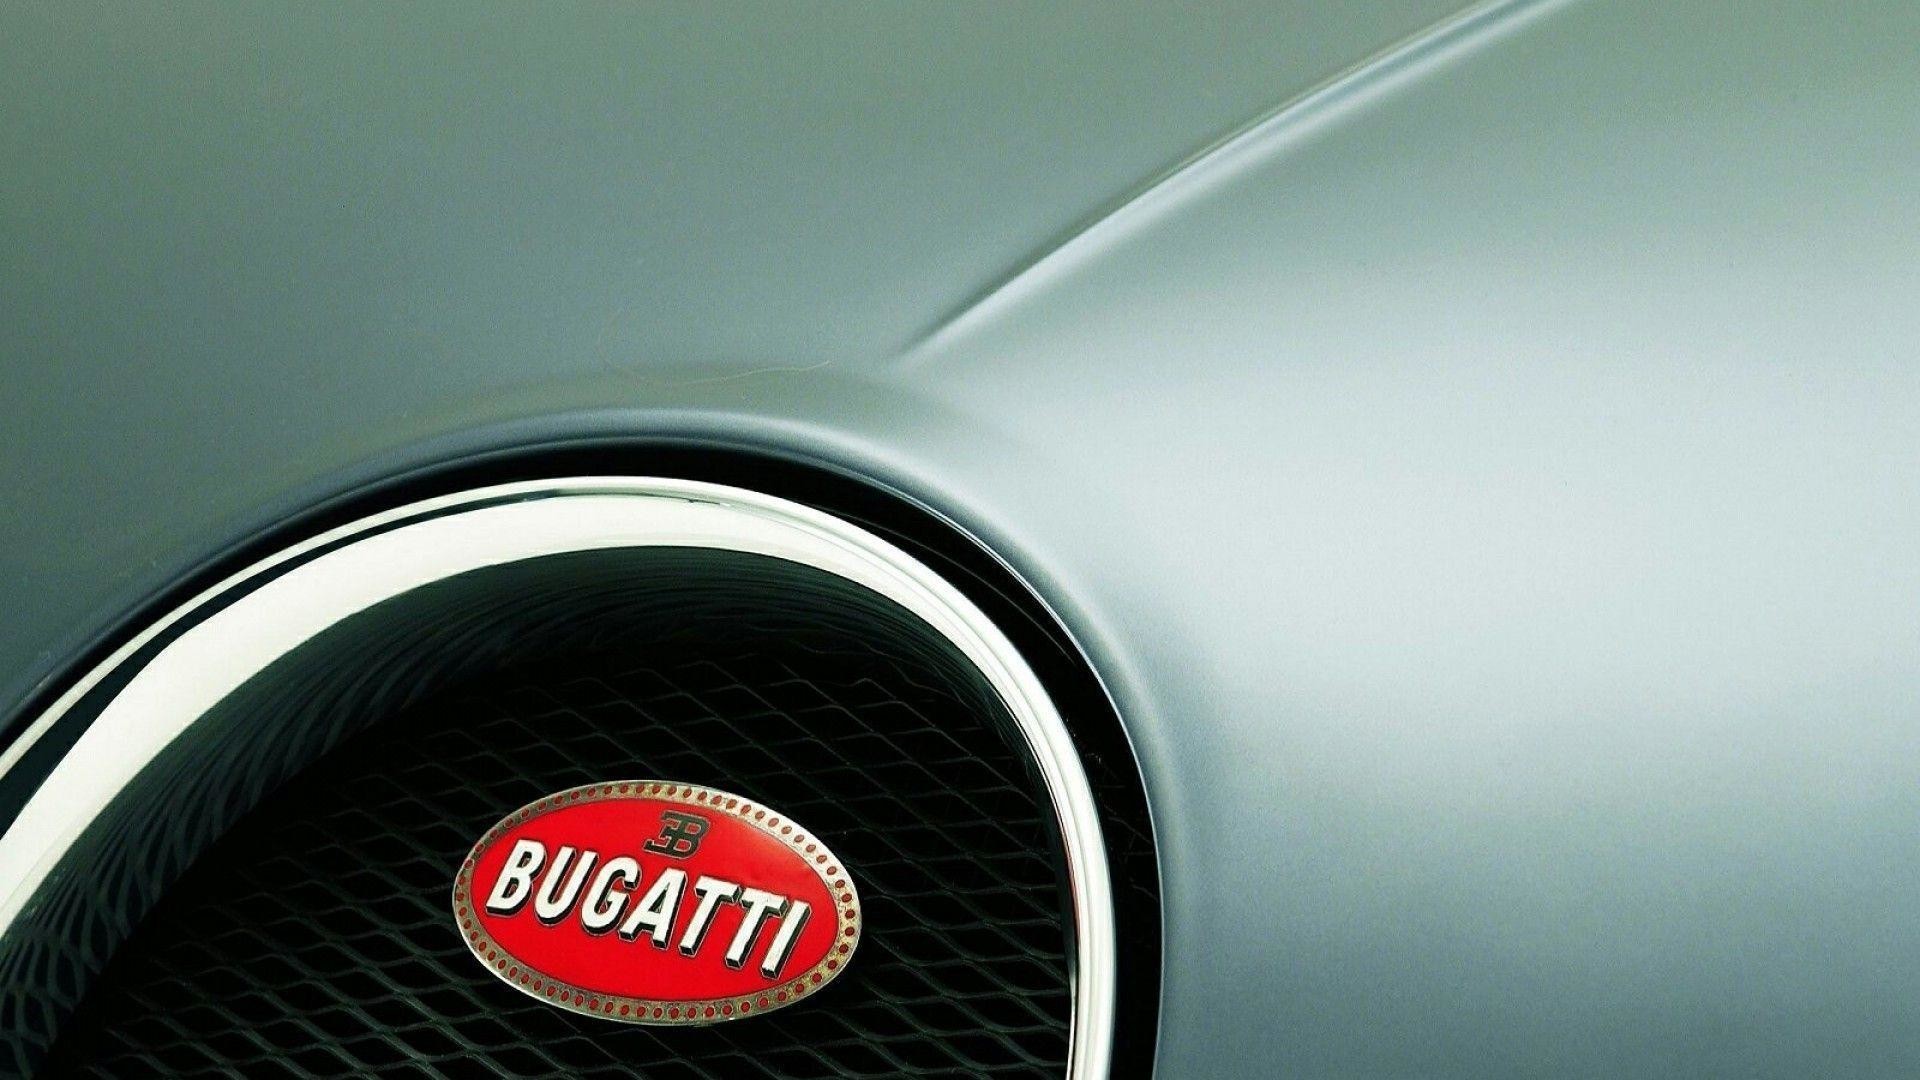 1920x1080 Bugatti Brand Logo Design Background Hd Wallpaper Bugatti Brand .